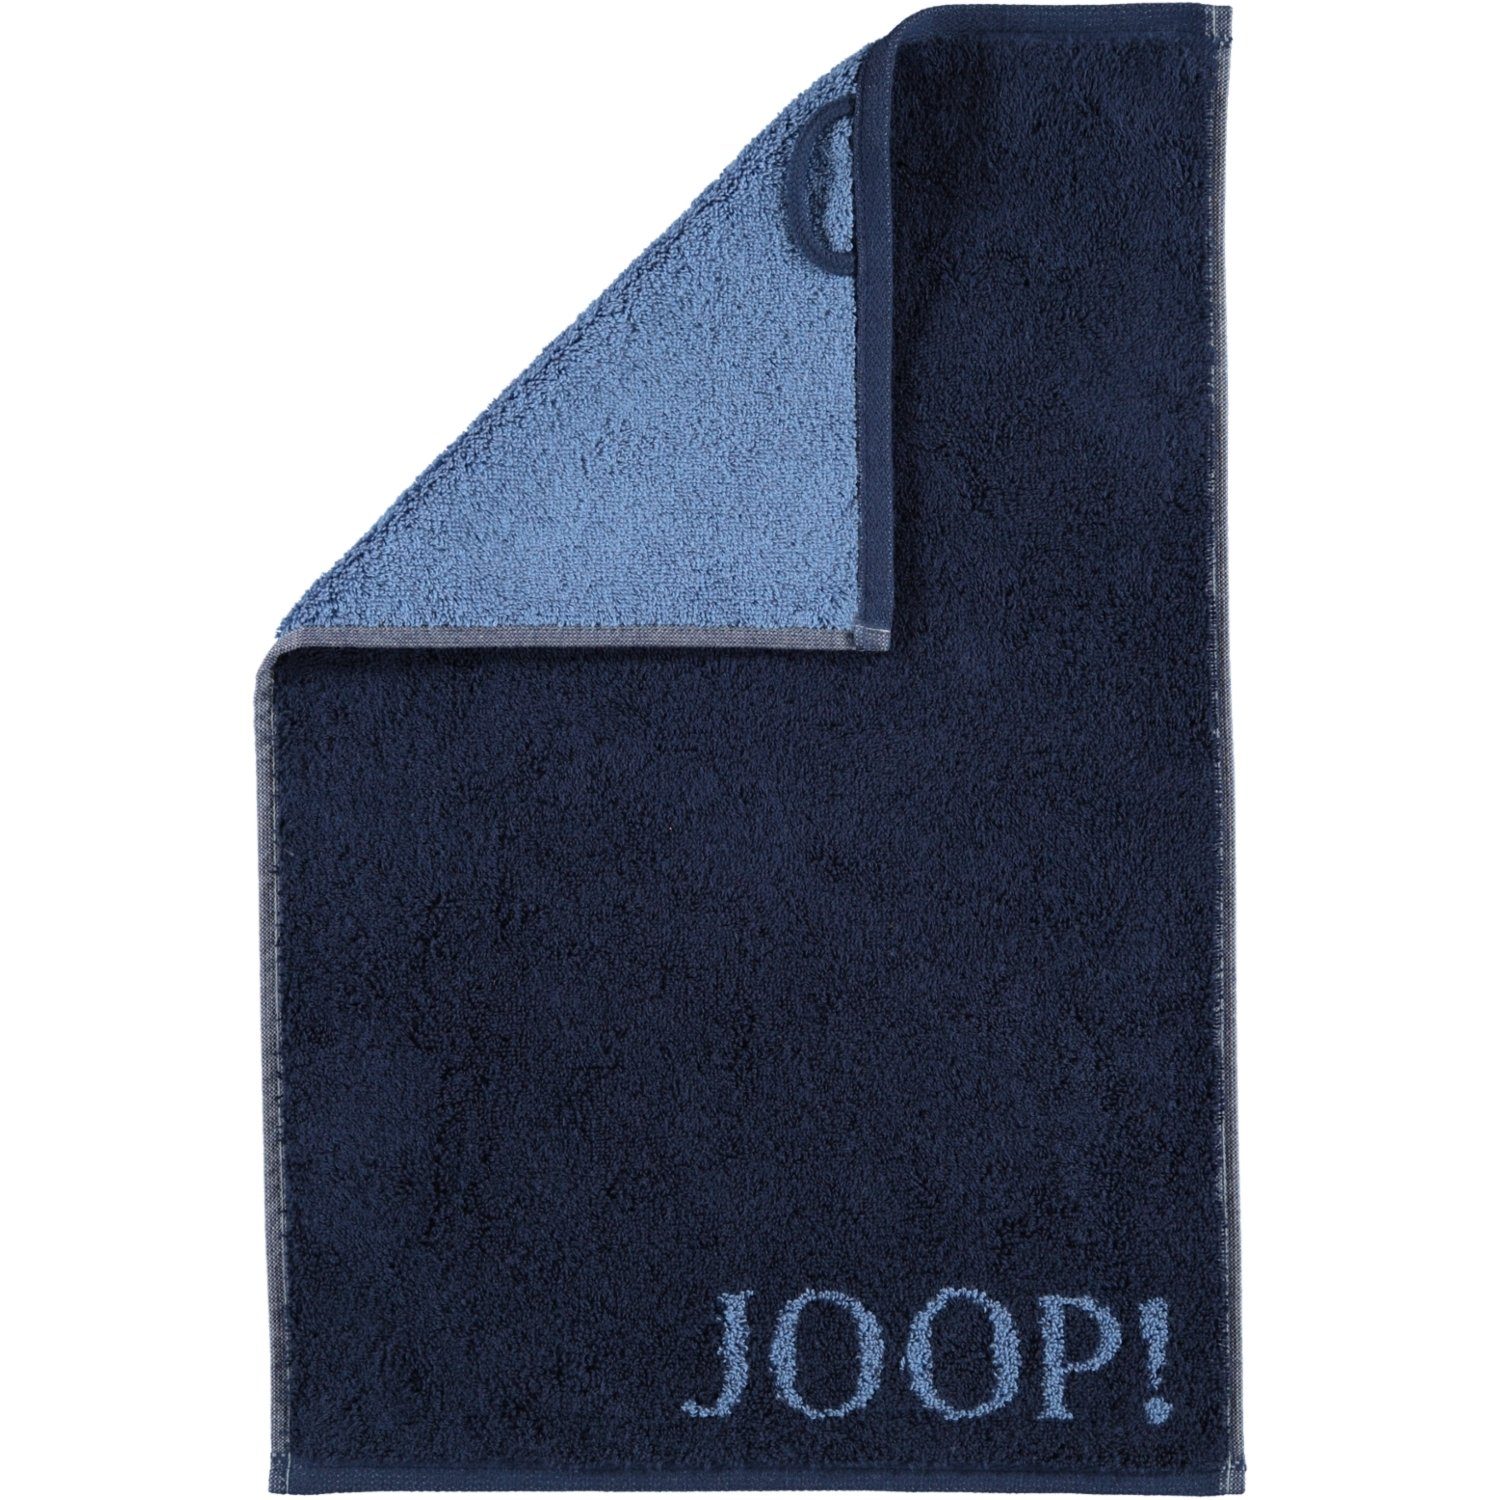 Joop! Handtücher Classic Doubleface 1600, 100% Baumwolle navy - 14